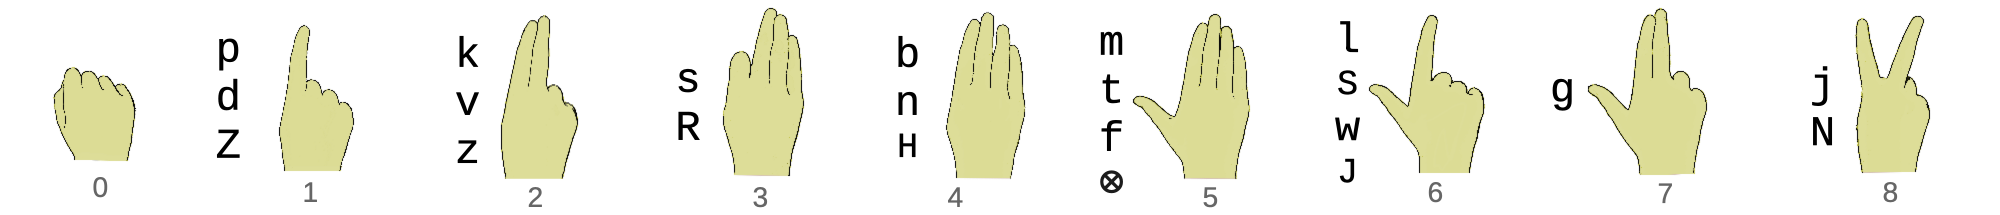 Représentation des formes de la main et leurs phonèmes – consonnes